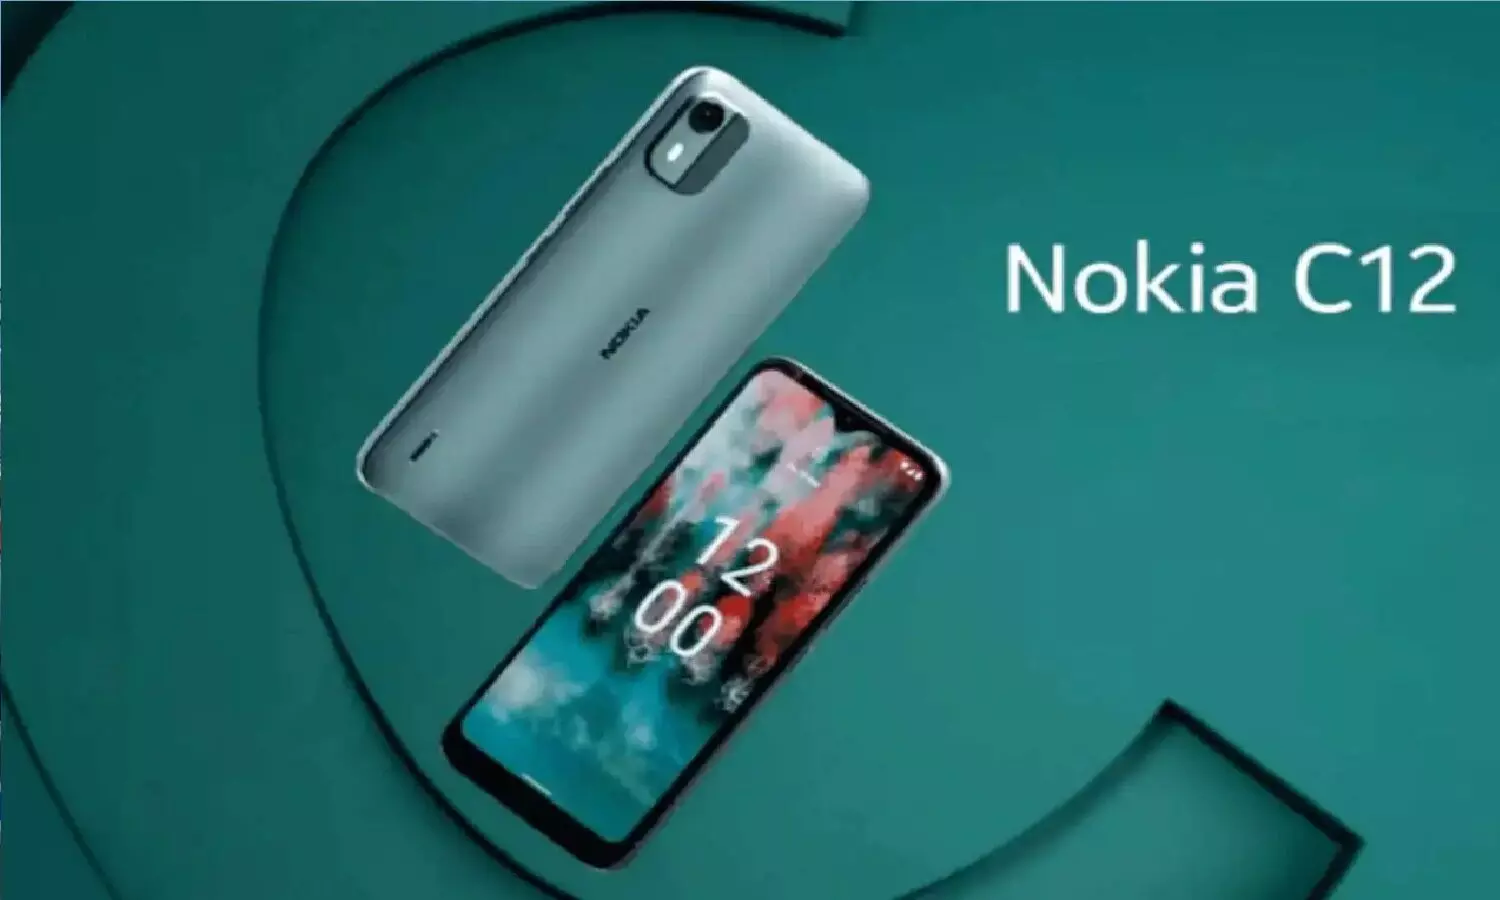 Nokia का सबसे सस्ता स्मार्टफोन Nokia C12 लॉन्च, जानें इस मोबाइल की खासियत